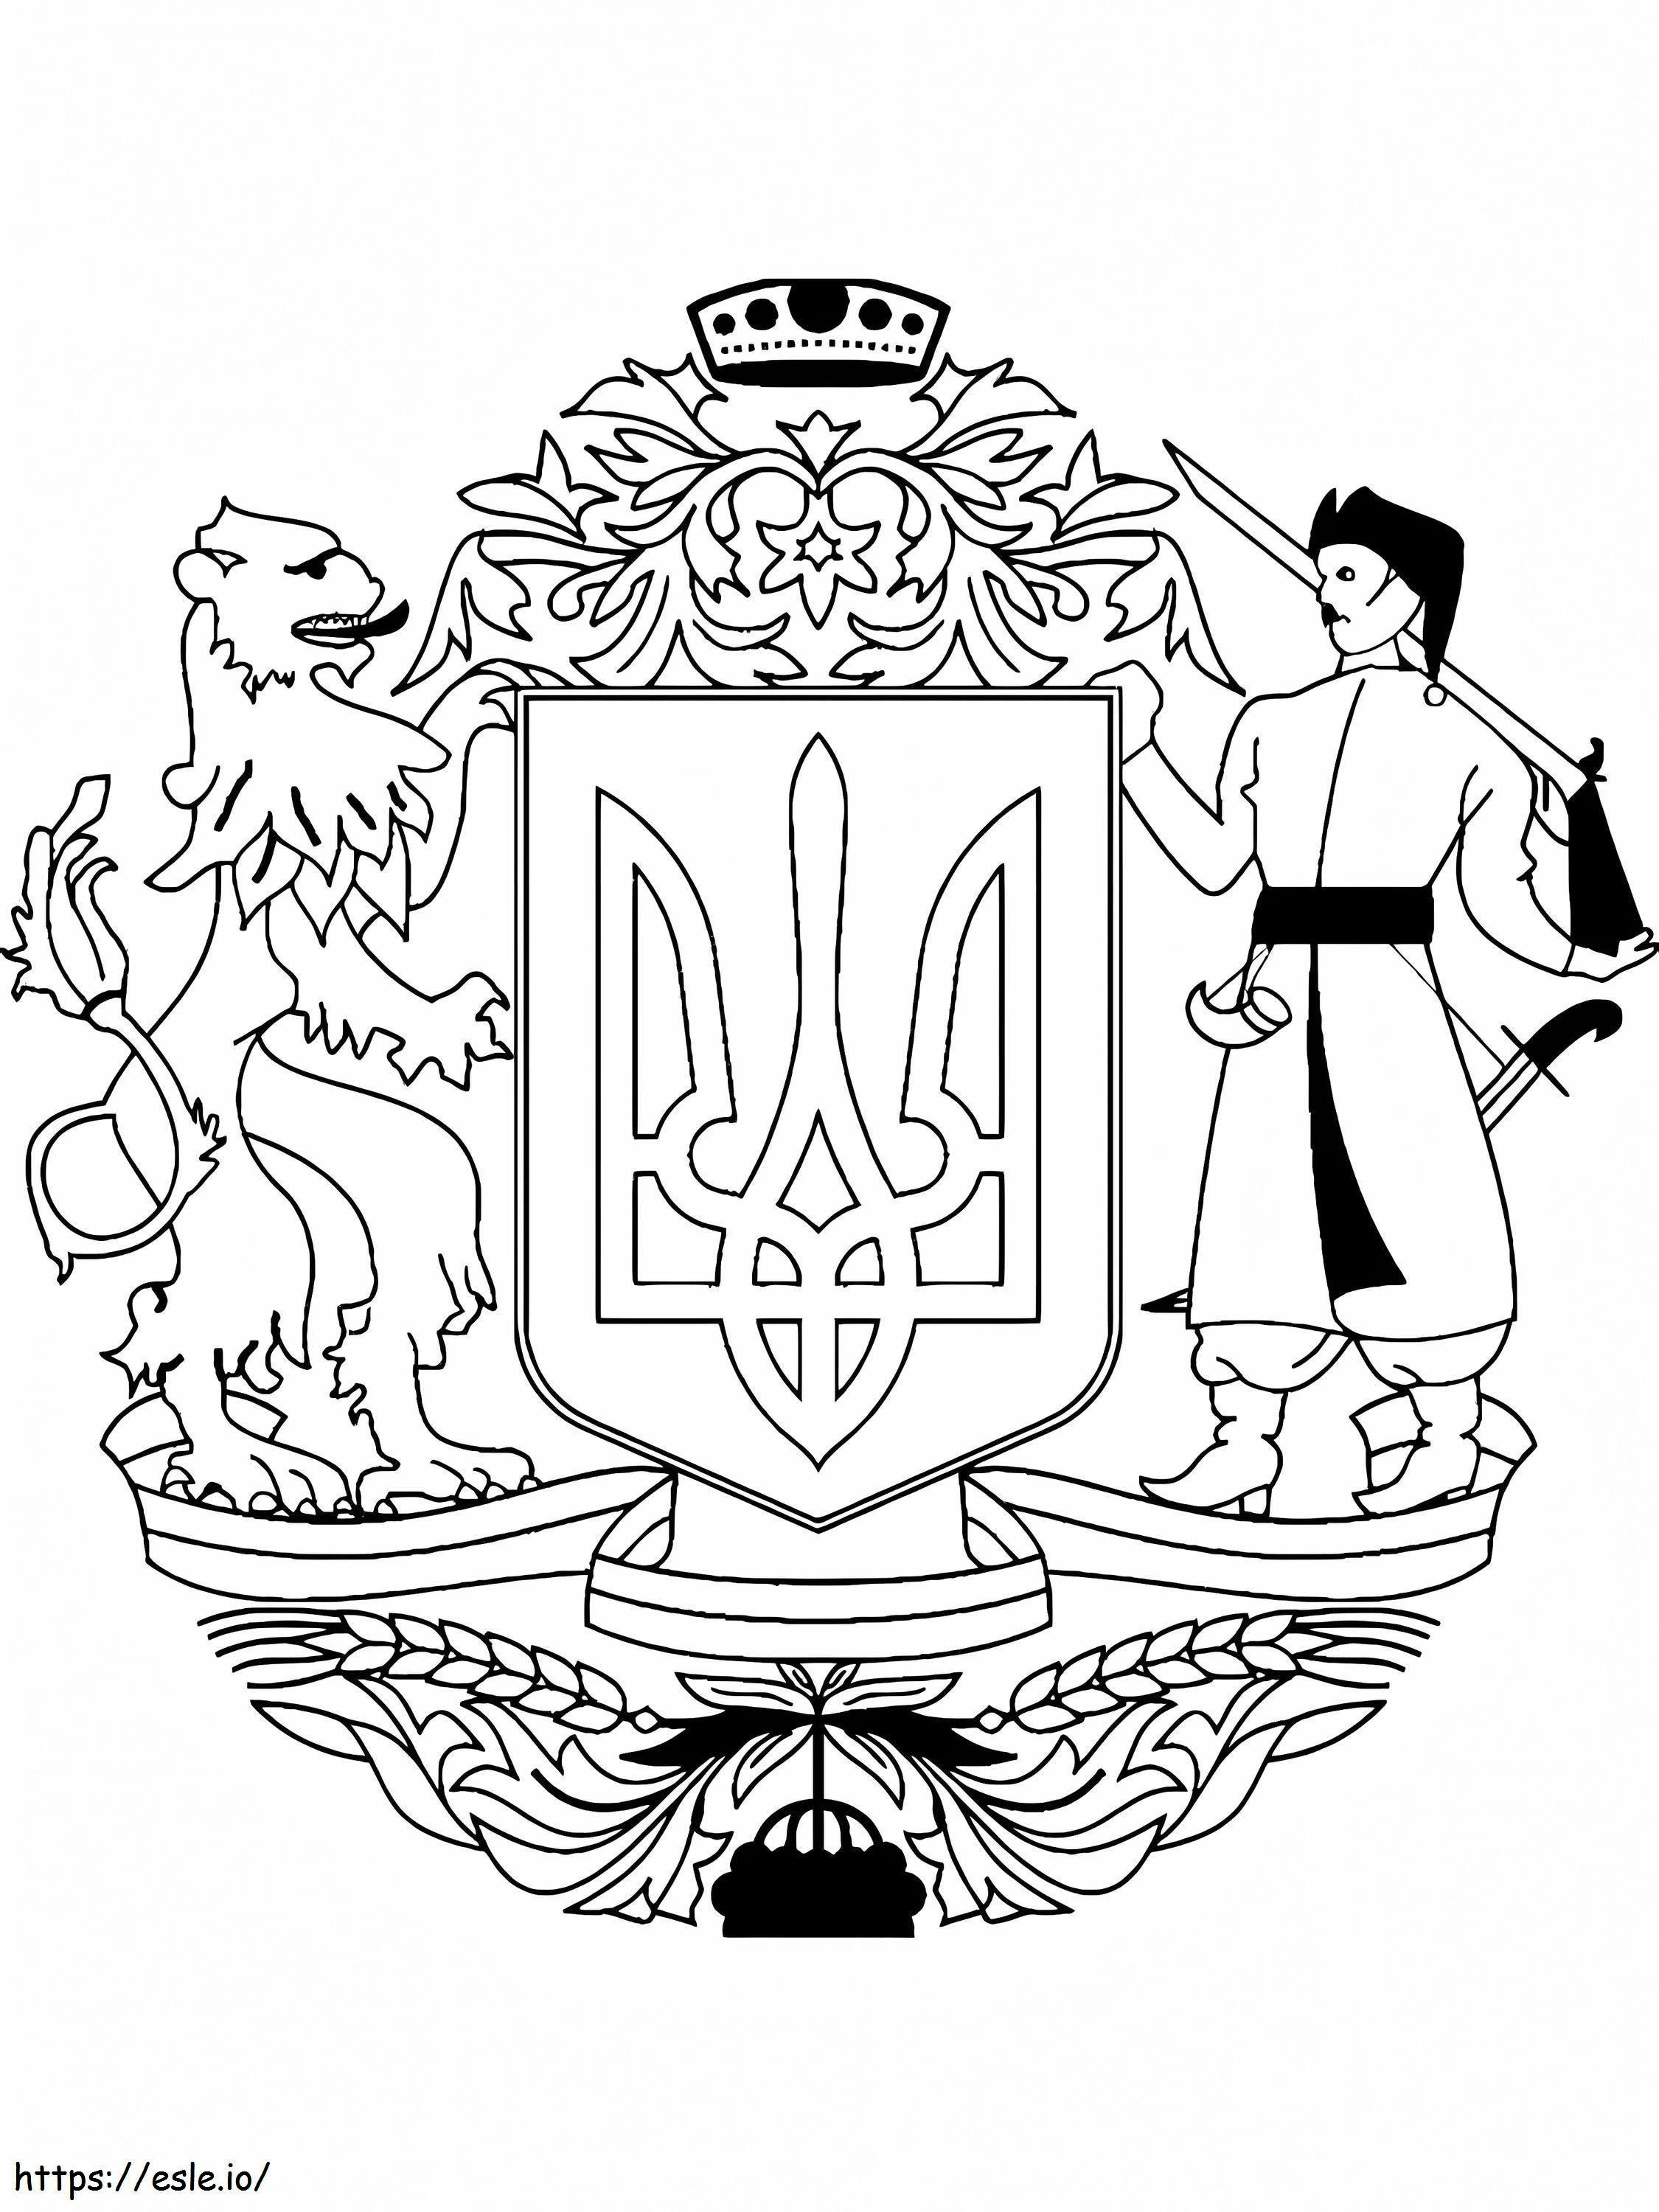 Brasão de Armas da Ucrânia 1 para colorir